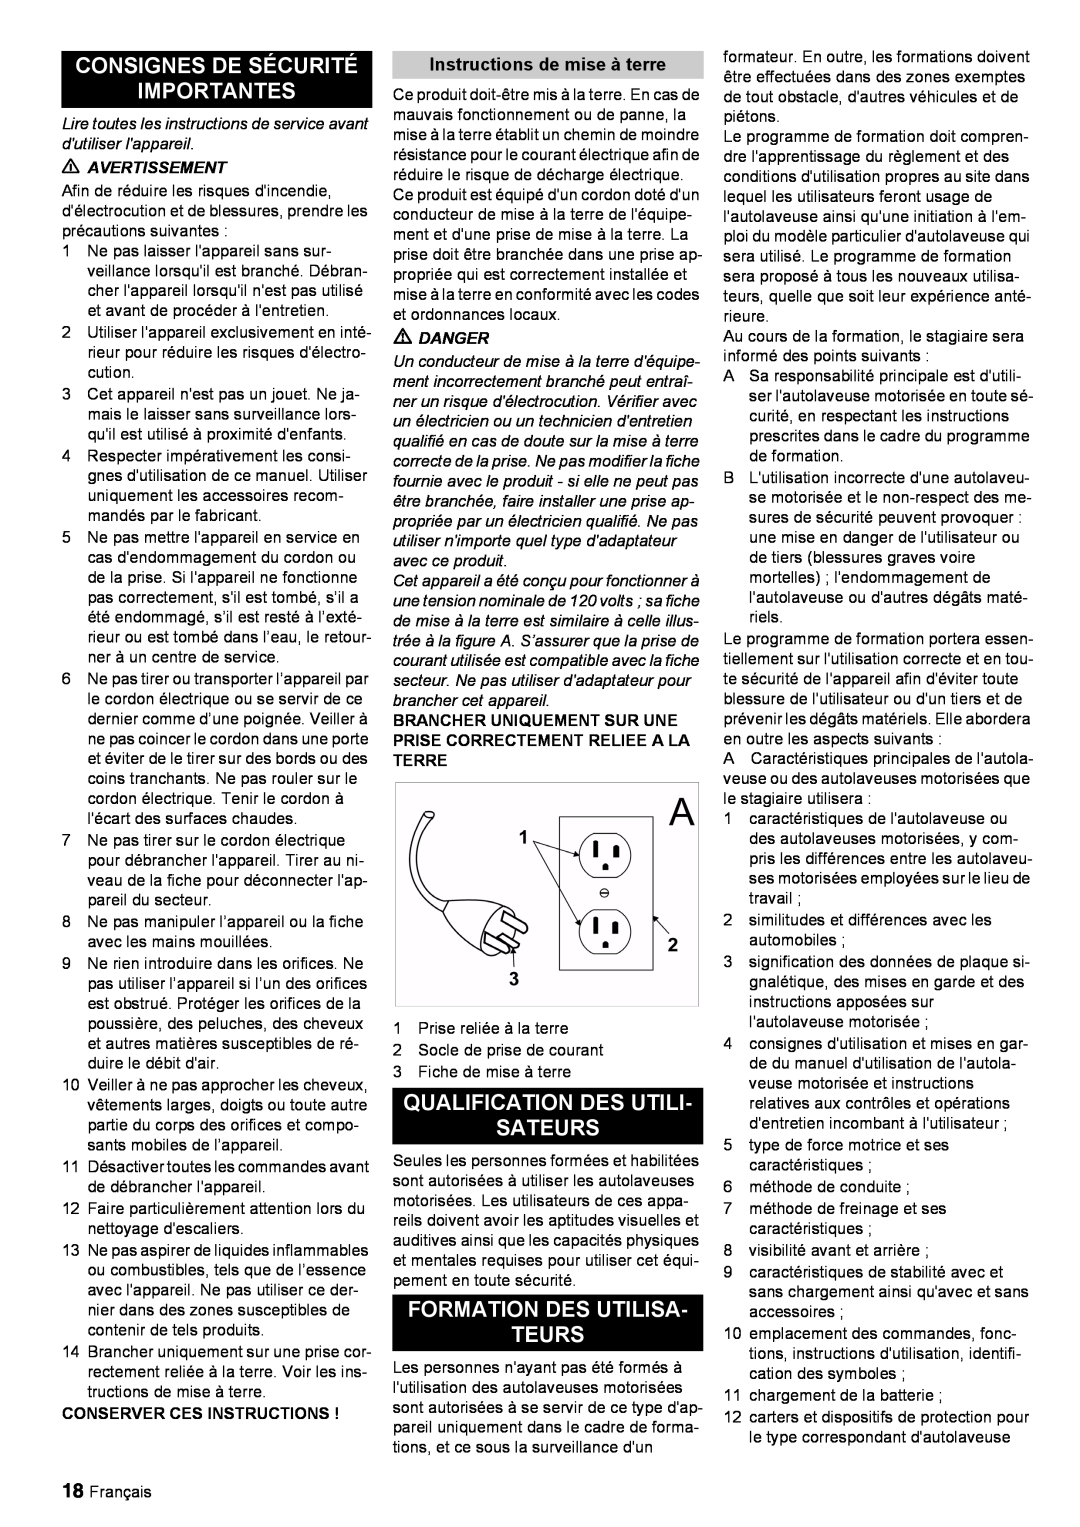 Windsor 30 SP manual Consignes De Sécurité Importantes, Qualification Des Utili Sateurs, Formation Des Utilisa Teurs 